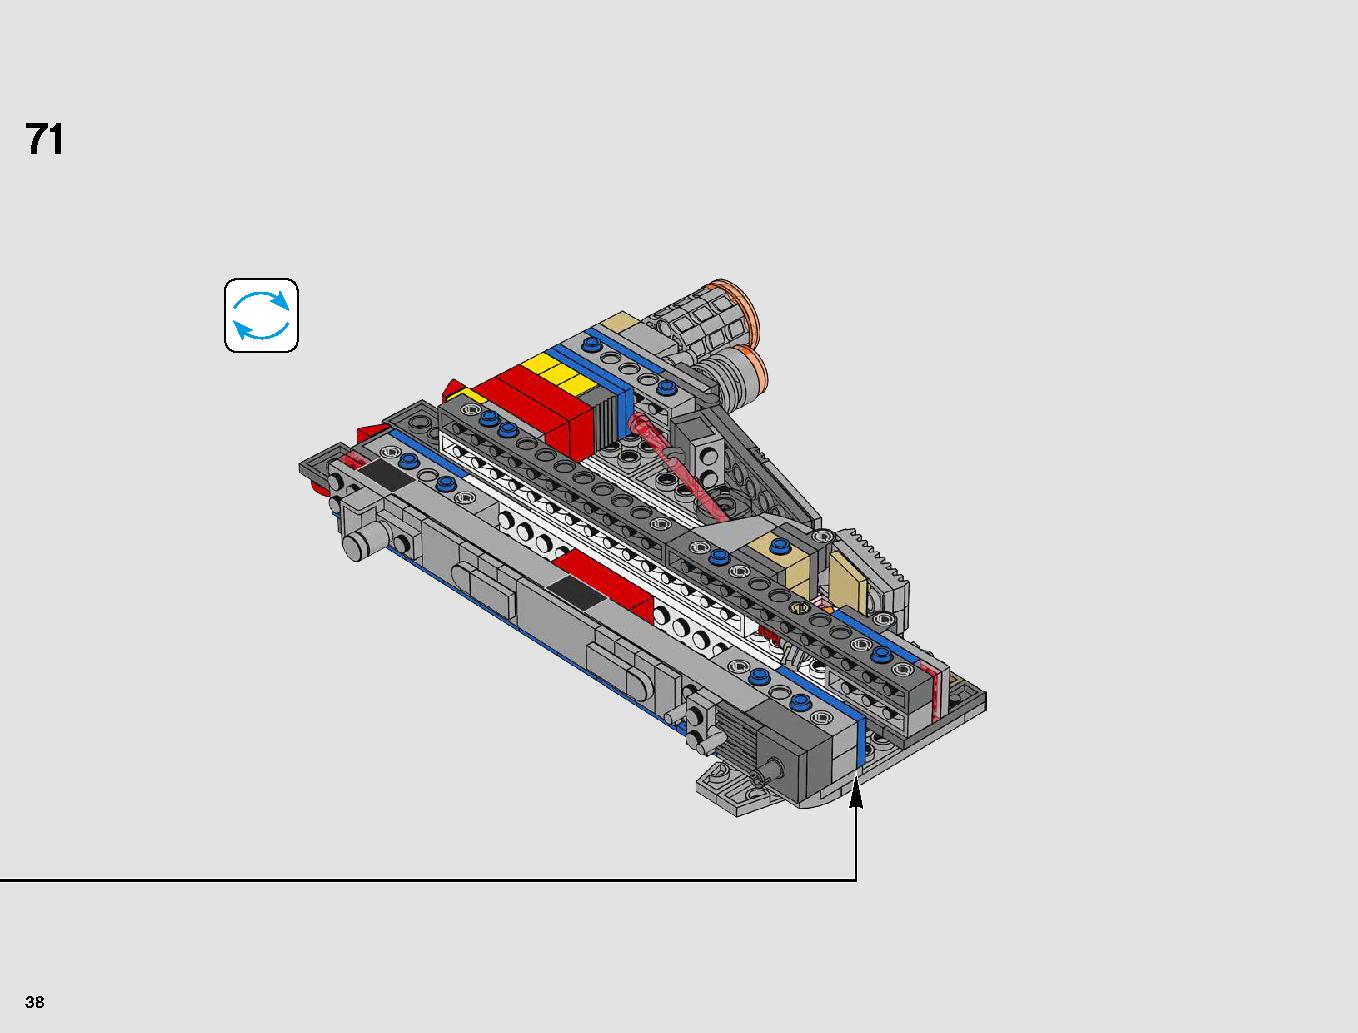 レジスタンス・ボマー 75188 レゴの商品情報 レゴの説明書・組立方法 38 page